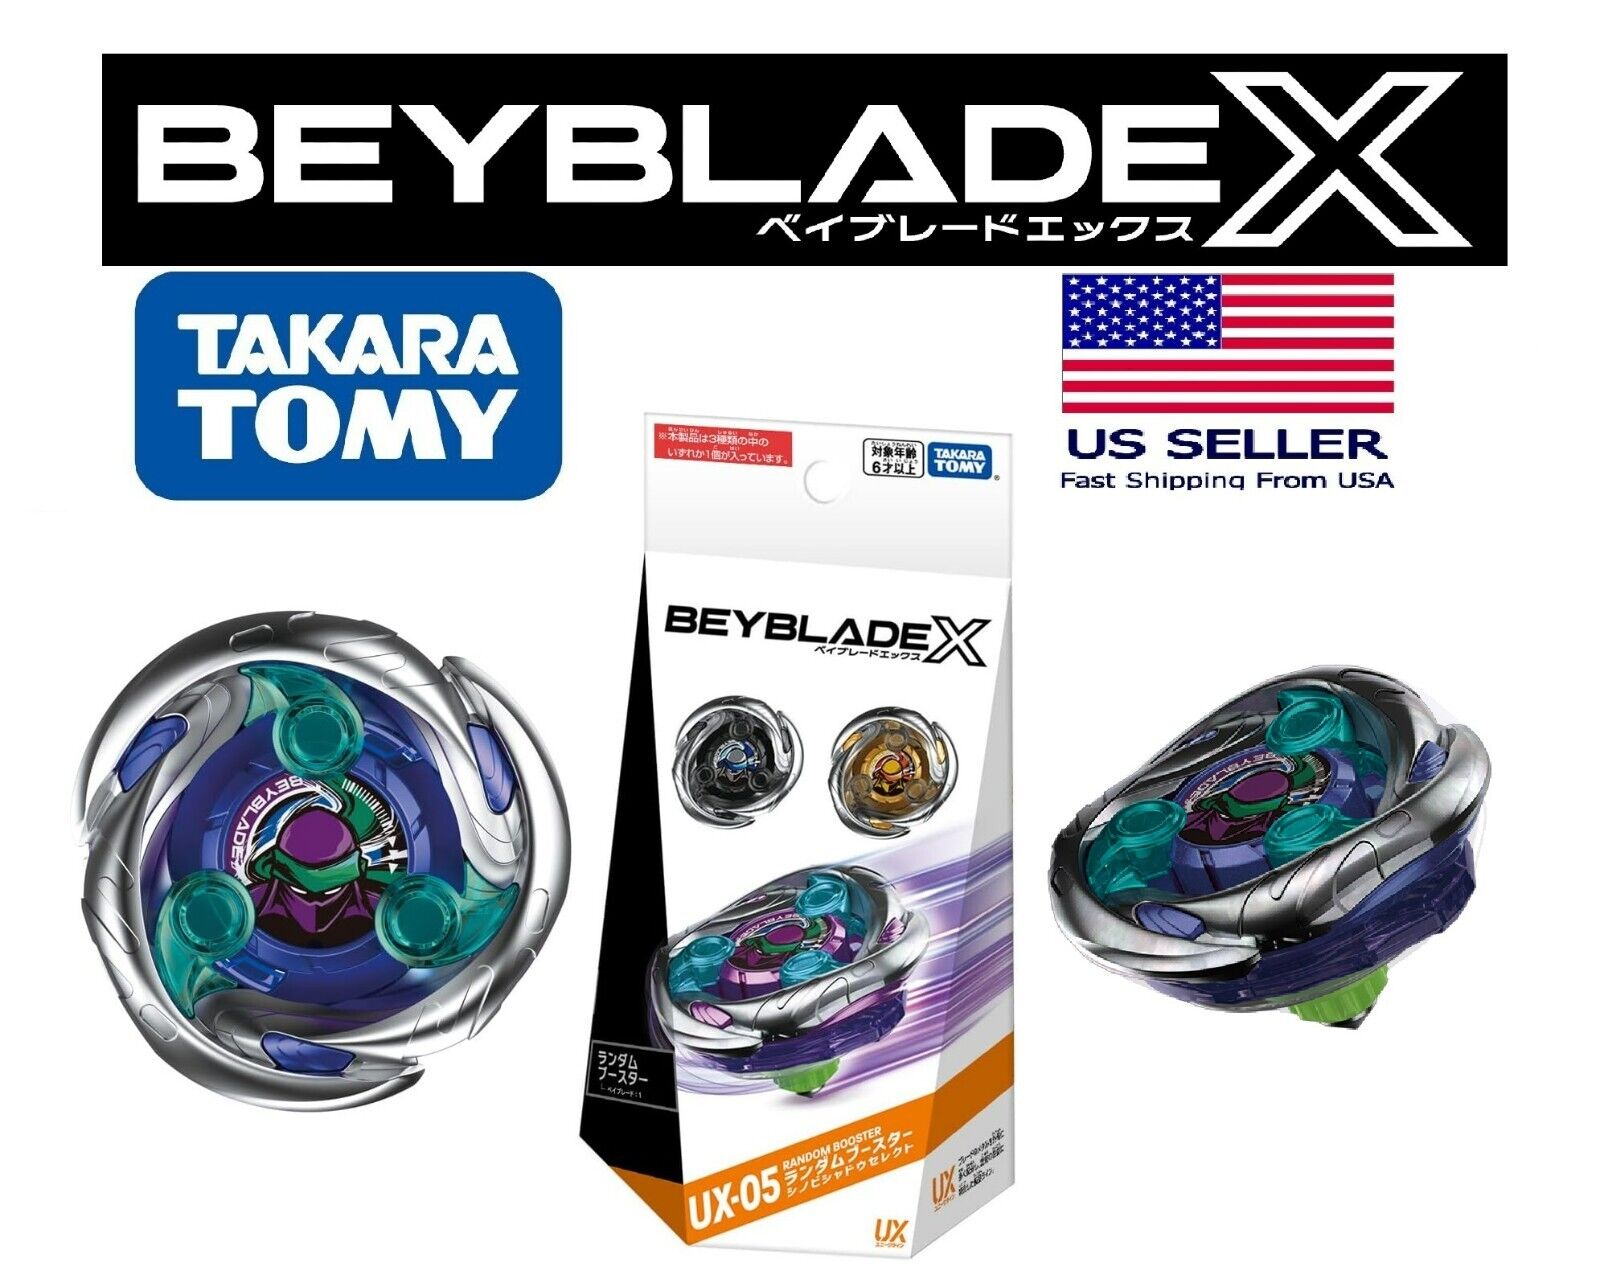 Takara Tomy Beyblade X UX-05 01 Shinobi Shadow 1-80MN PRIZE Confirmed.